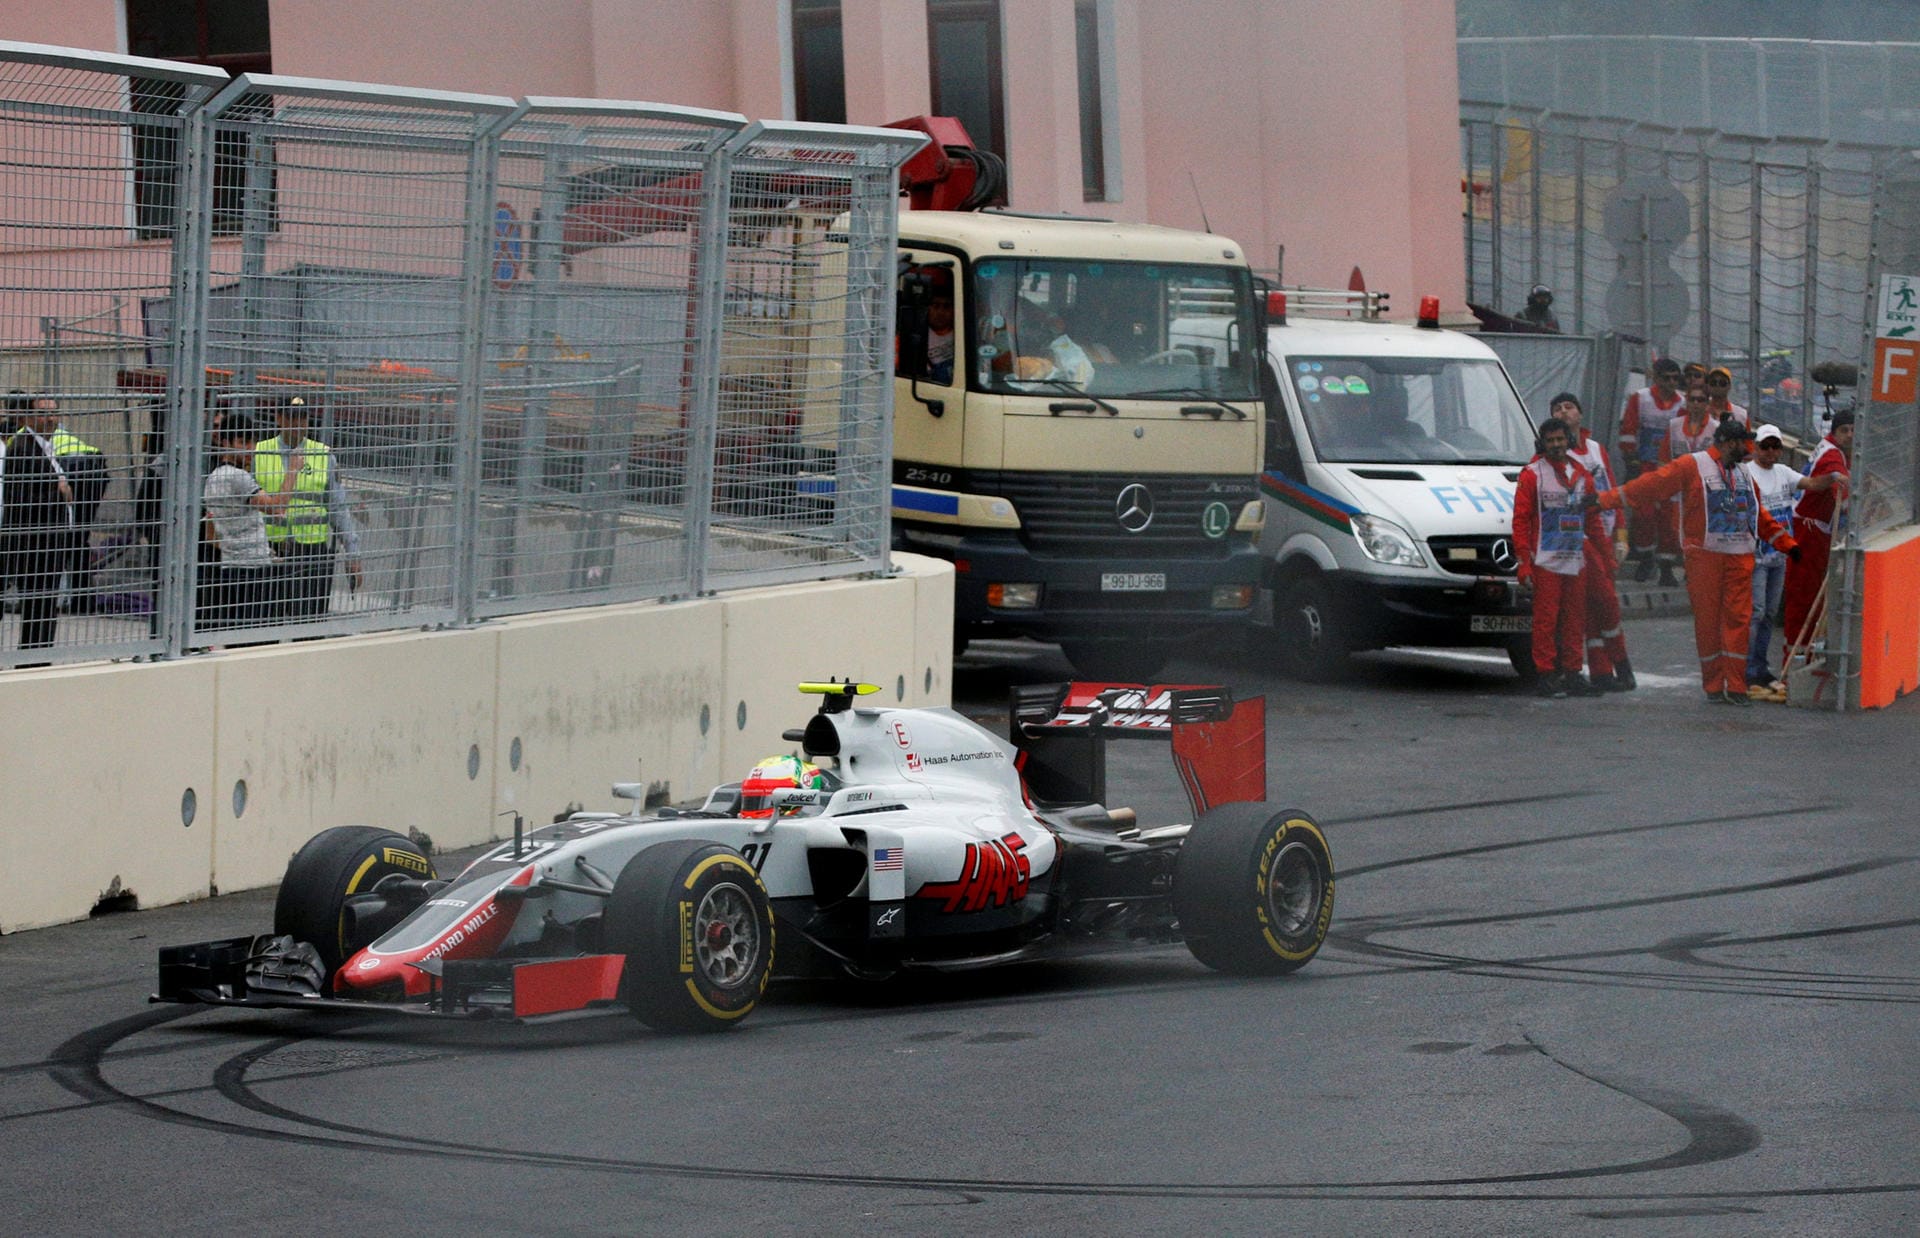 Fahrerisches Können: Haas-Pilot Esteban Gutierrez beim Wenden um die eigene Achse in einem der engen Notausgänge.